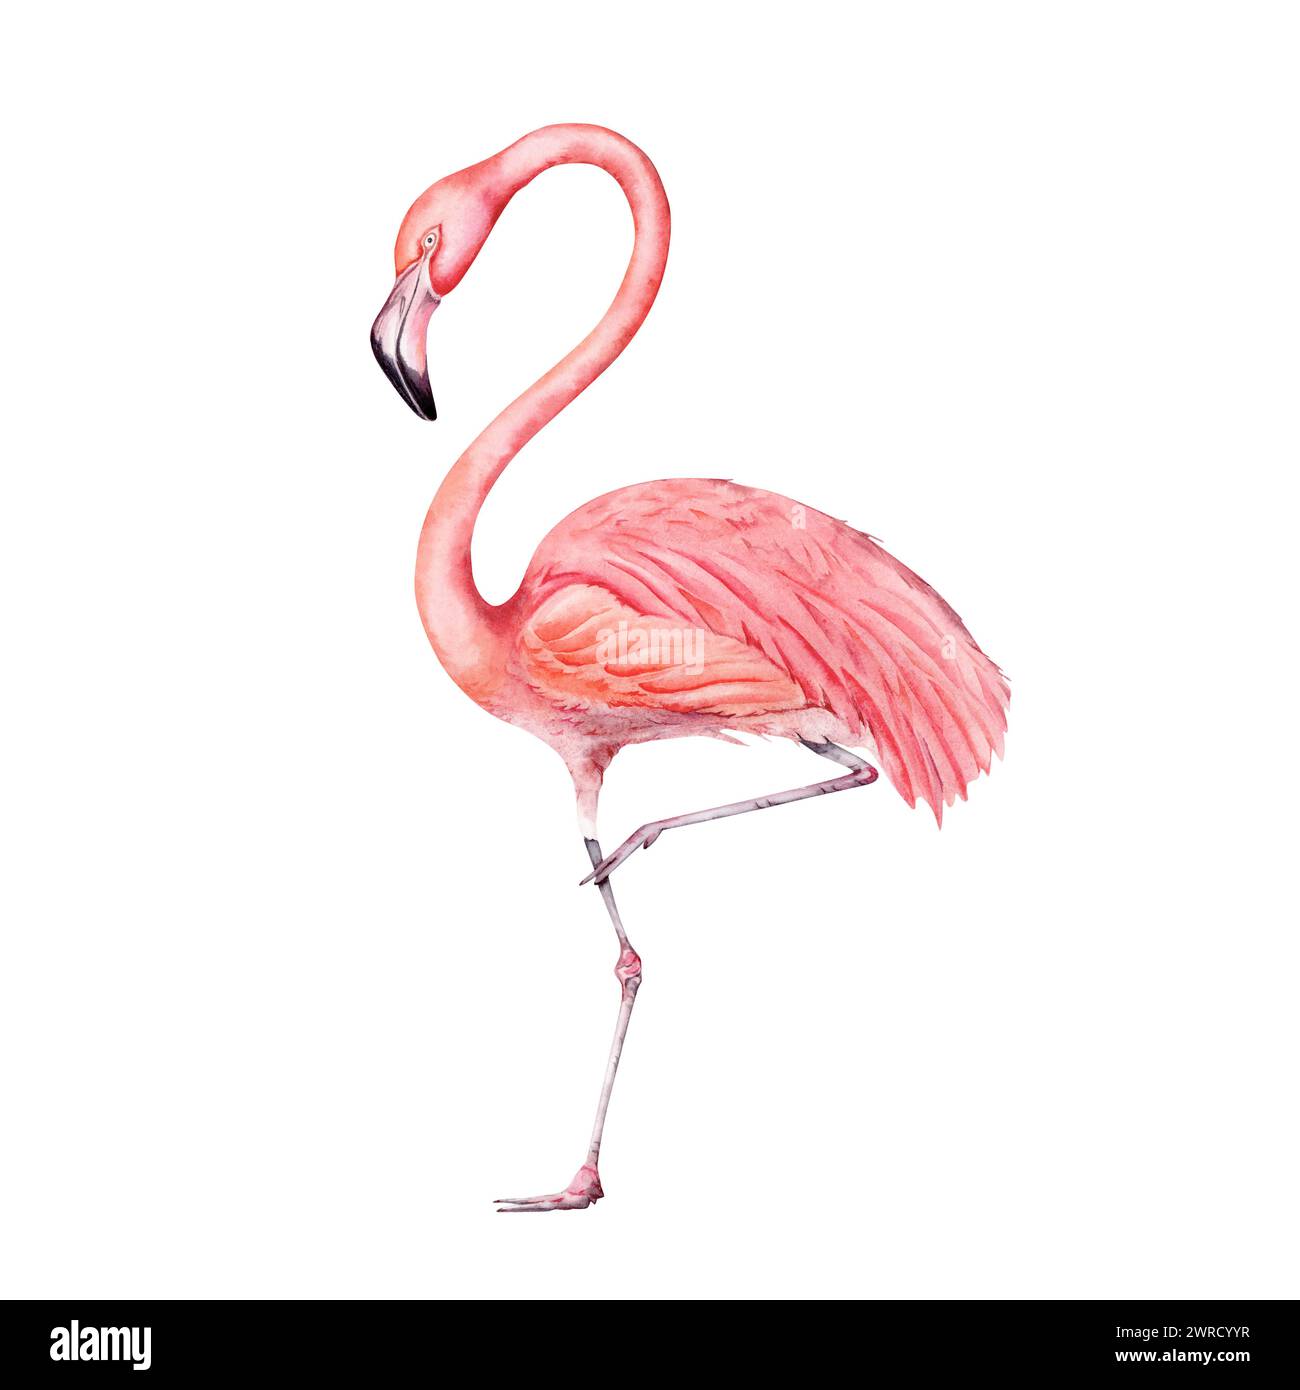 Peinture rose d'oiseau flamant rose. Isolé sur fond blanc. Elément d'illustration dessiné à la main. Pour des motifs tropicaux exotiques, cartes, imprimés, invitations. H Banque D'Images